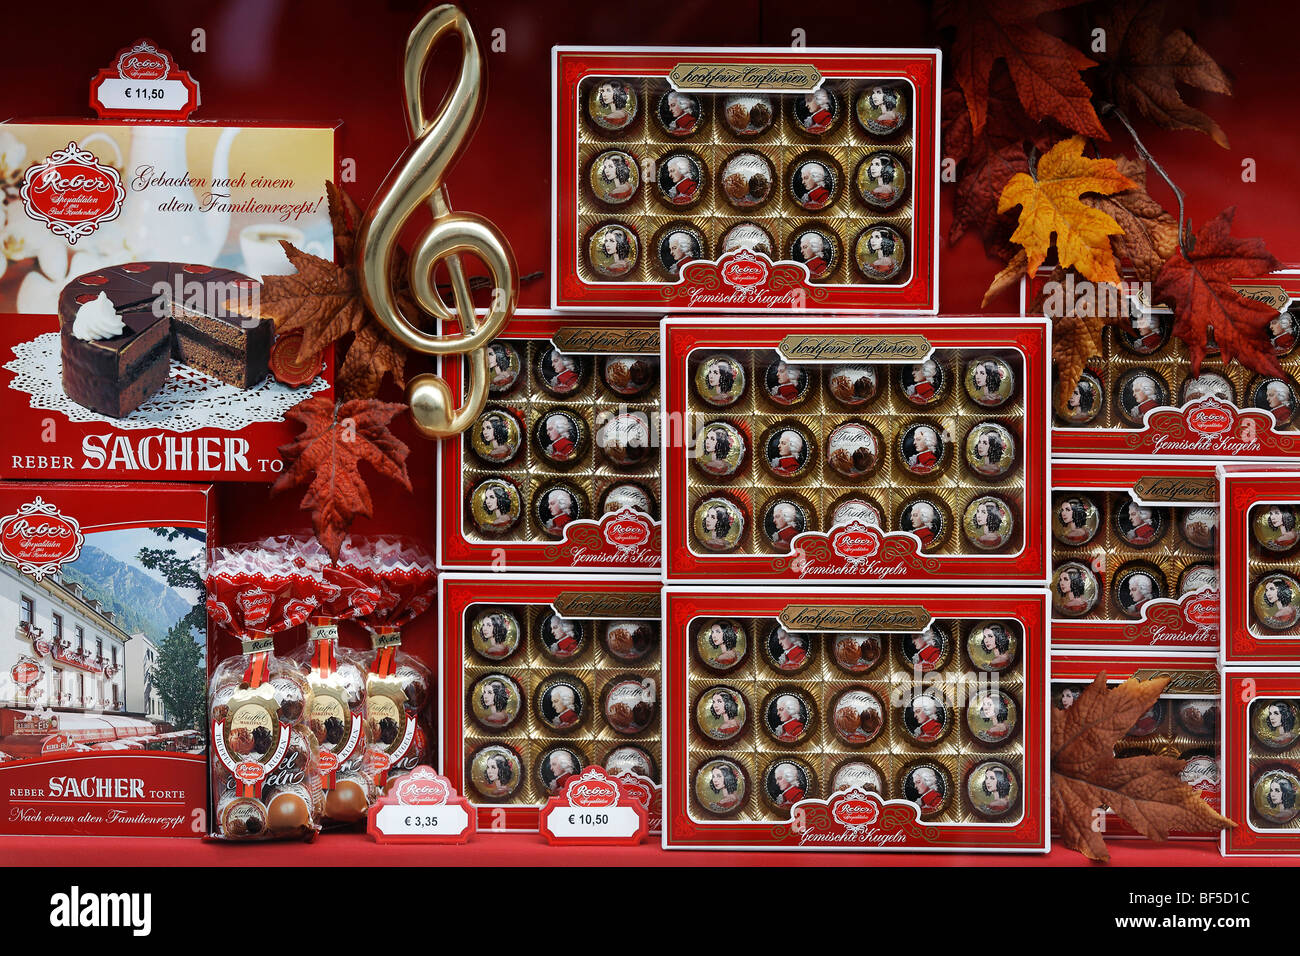 Candy shop, display window, genuine Reber Mozartkugeln pralines, Alter Markt square, Salzburg, Austria, Europe Stock Photo